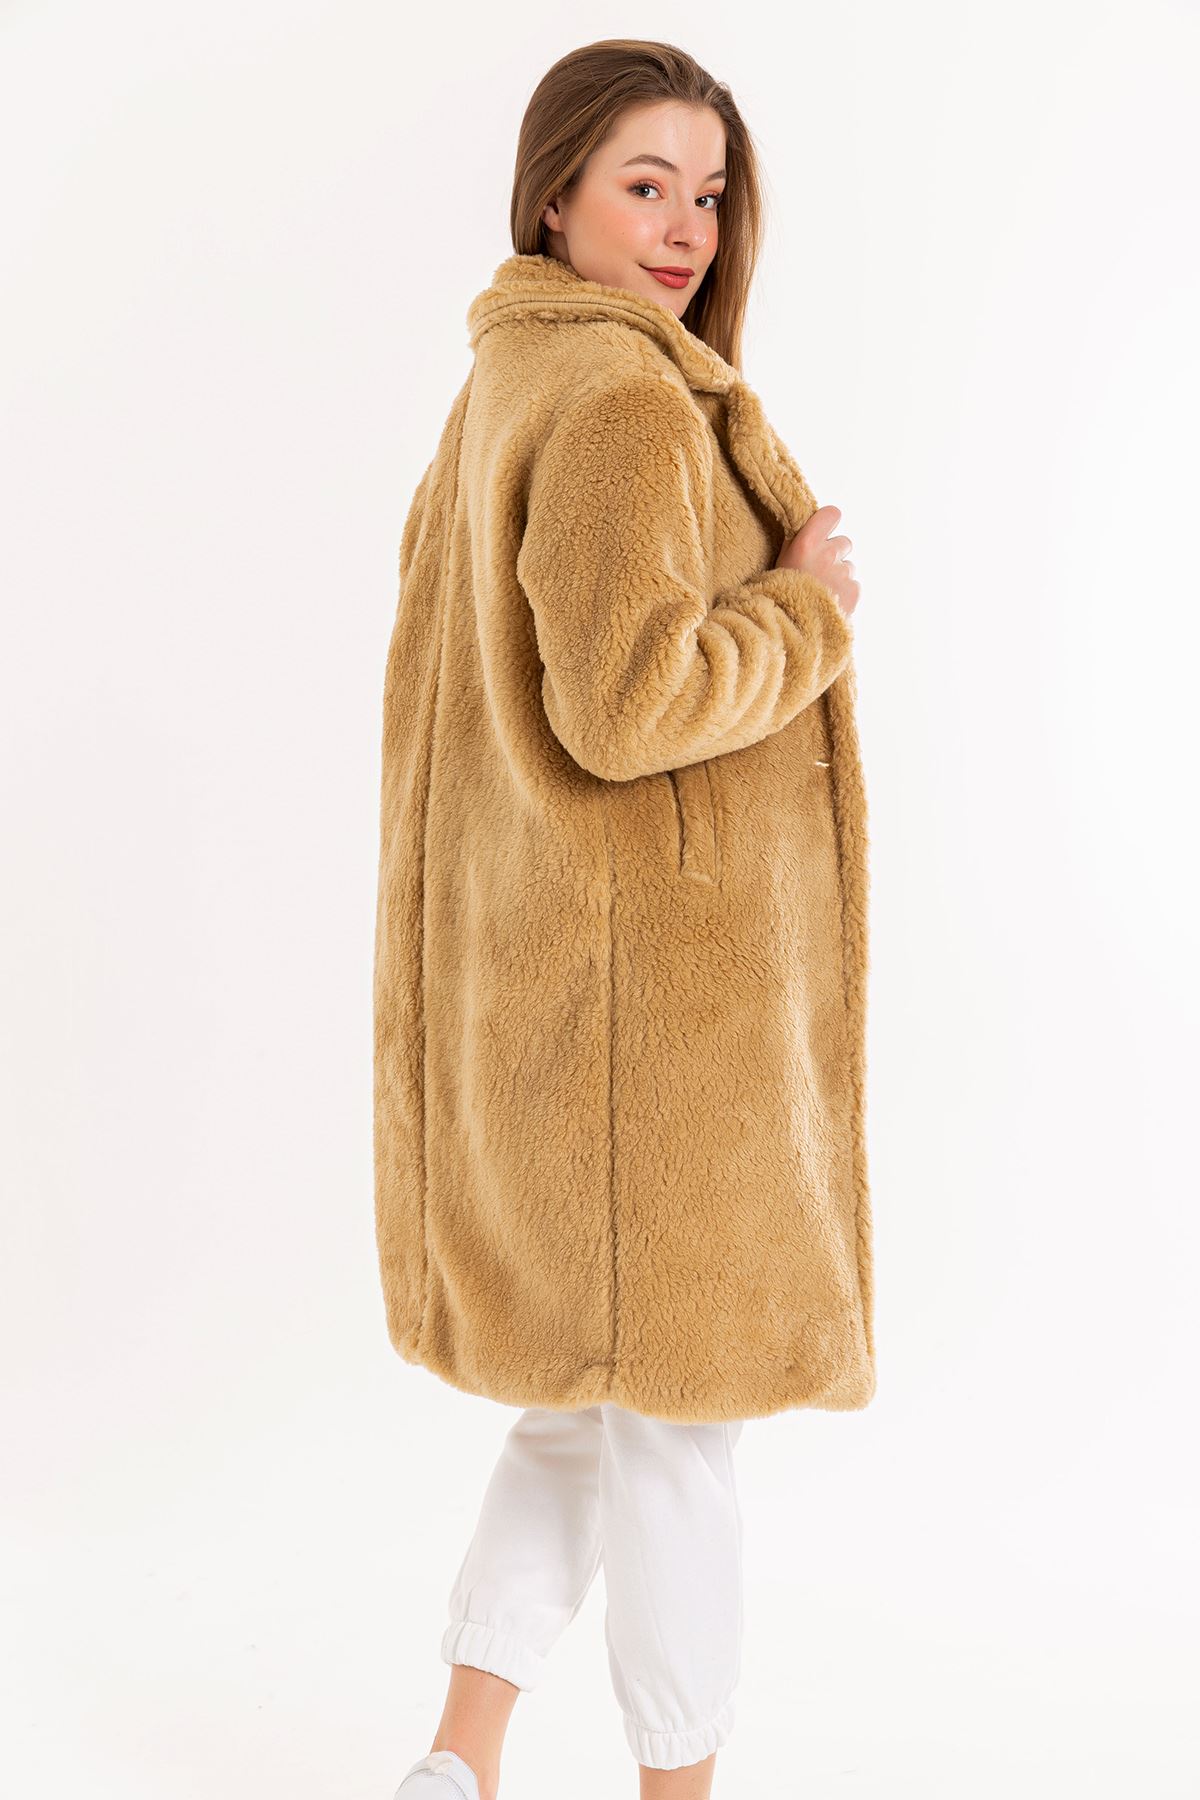 Teddy Kumaş Ceket Yaka Uzun Boy Rahat Kalıp Kadın Kaban-Camel